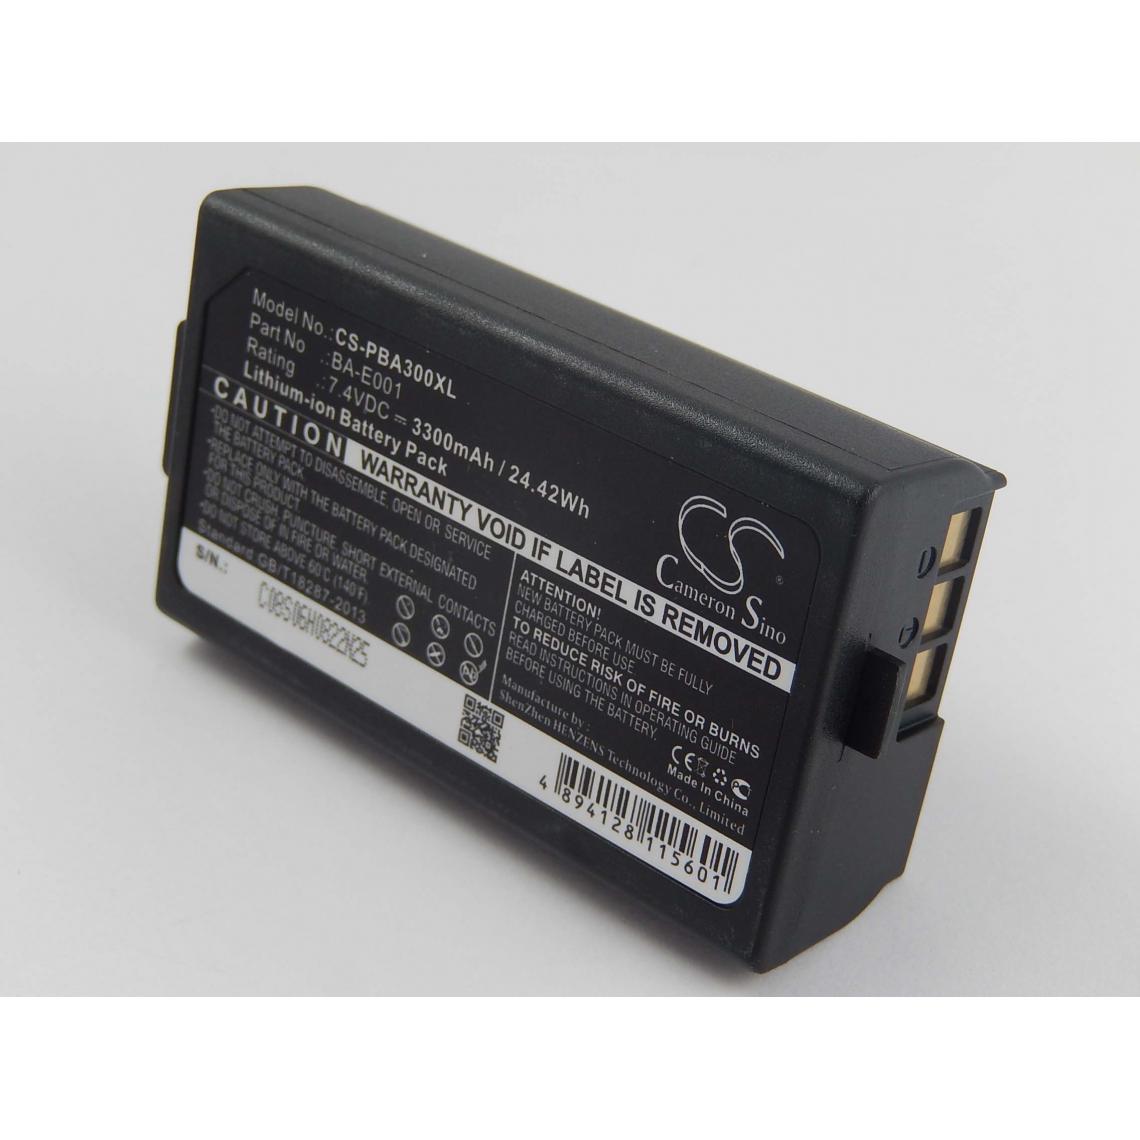 Vhbw - vhbw Batterie compatible avec Brother P-Touch PT-E500, PT-E550W imprimante, scanner, imprimante d'étiquettes (3300mAh, 7,4V, Li-ion) - Imprimante Jet d'encre